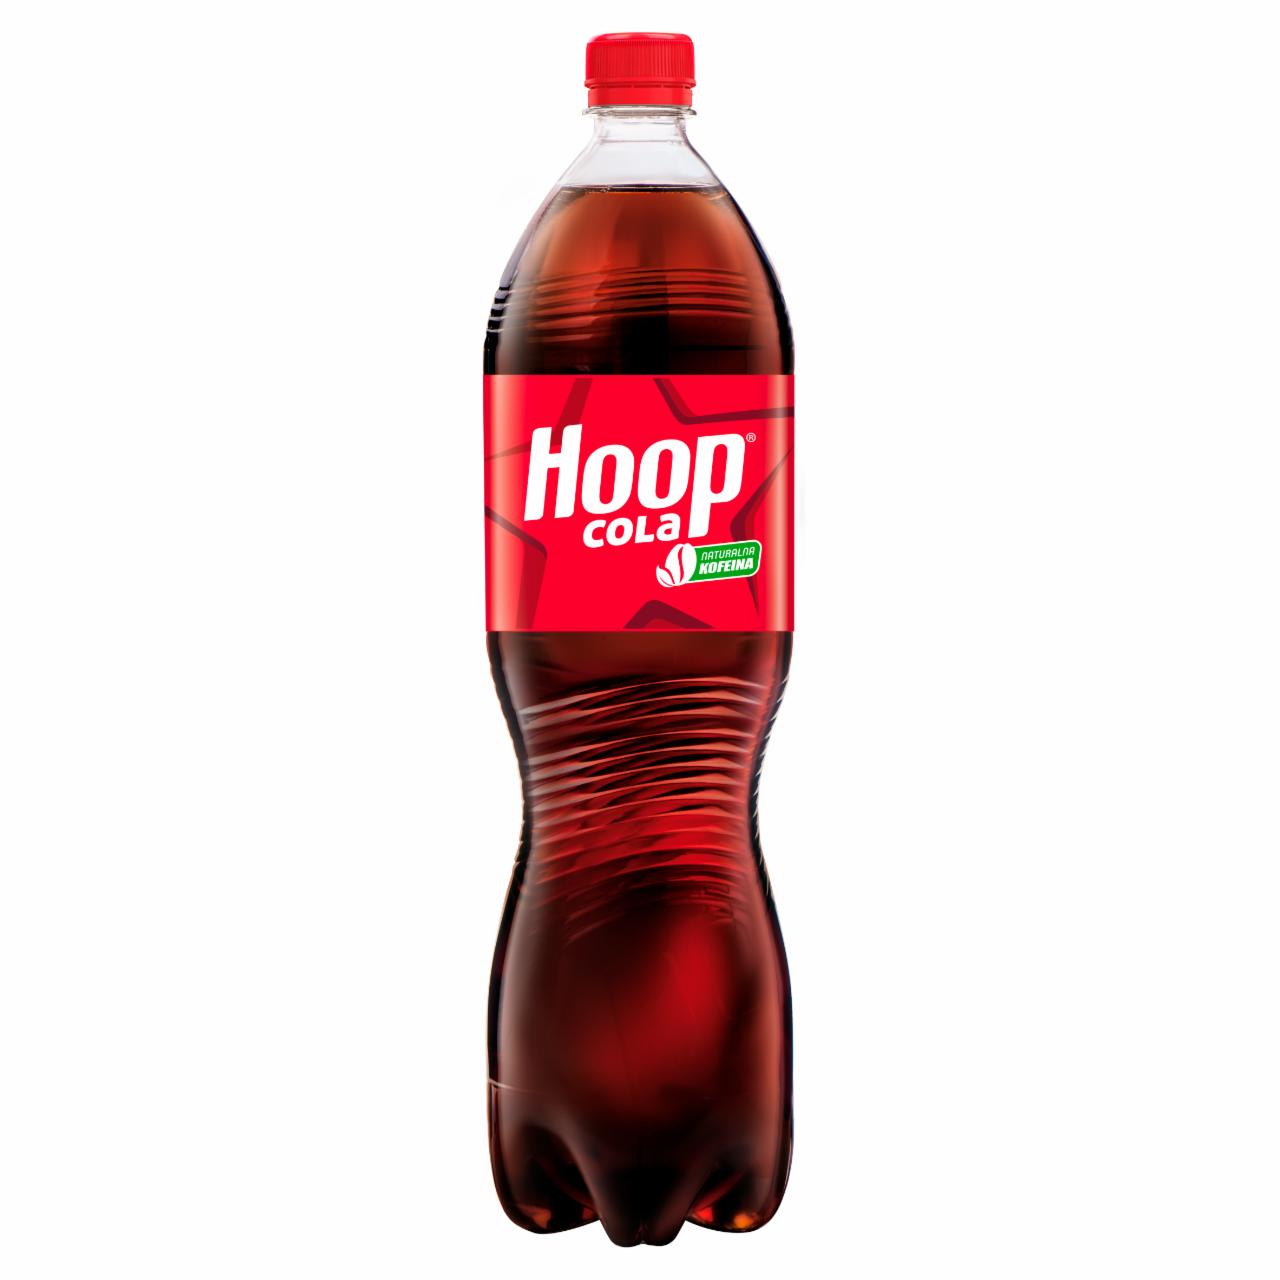 Zdjęcia - Hoop Cola Napój gazowany 1,5 l